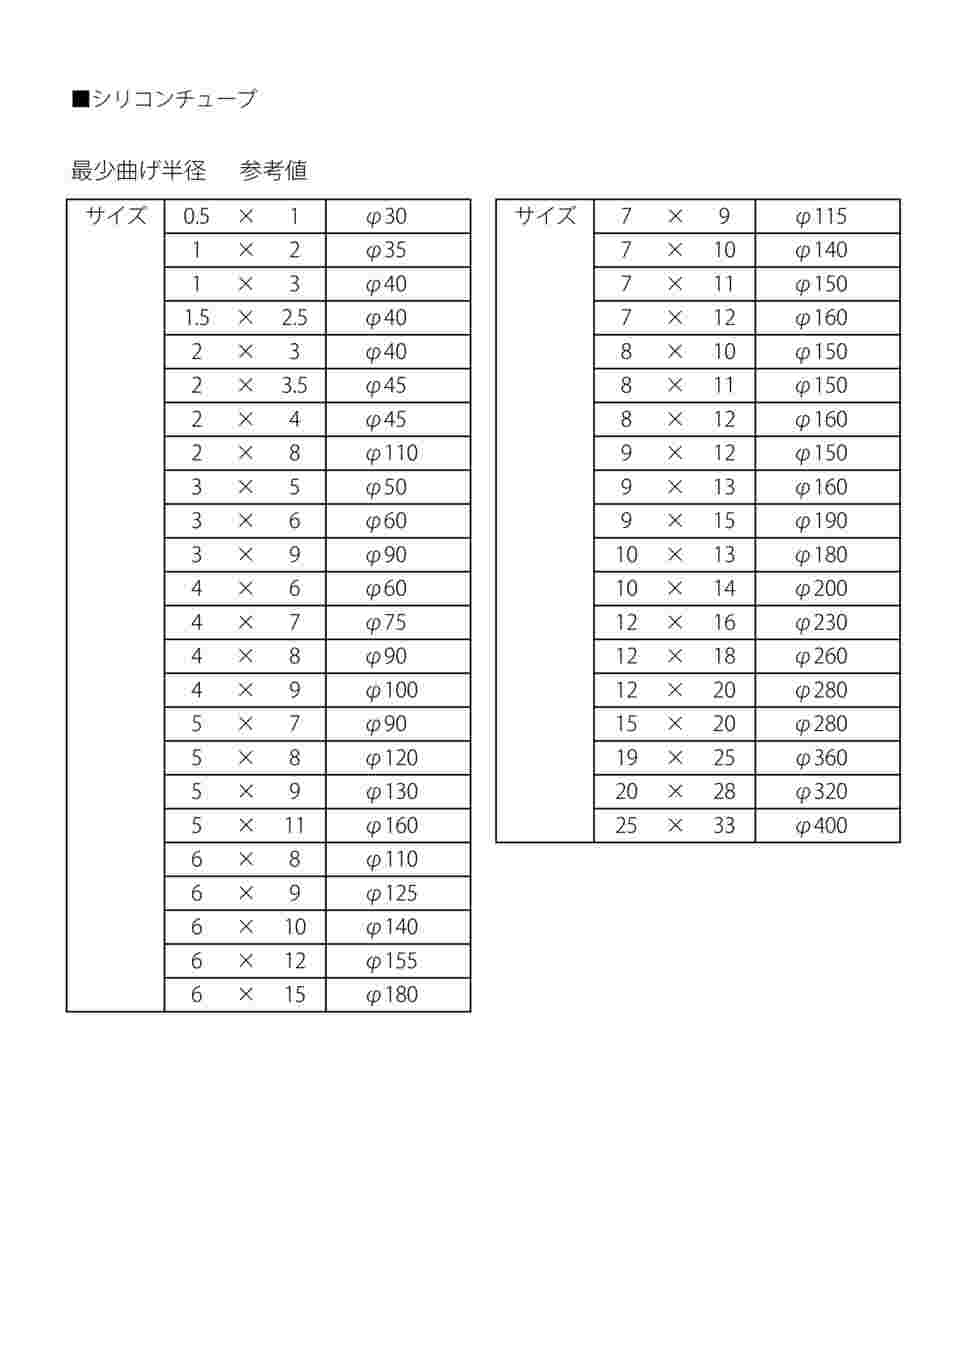 9-869-12 ラボラン(R)シリコンチューブ 6×10 1巻(11m) 【AXEL】 アズワン